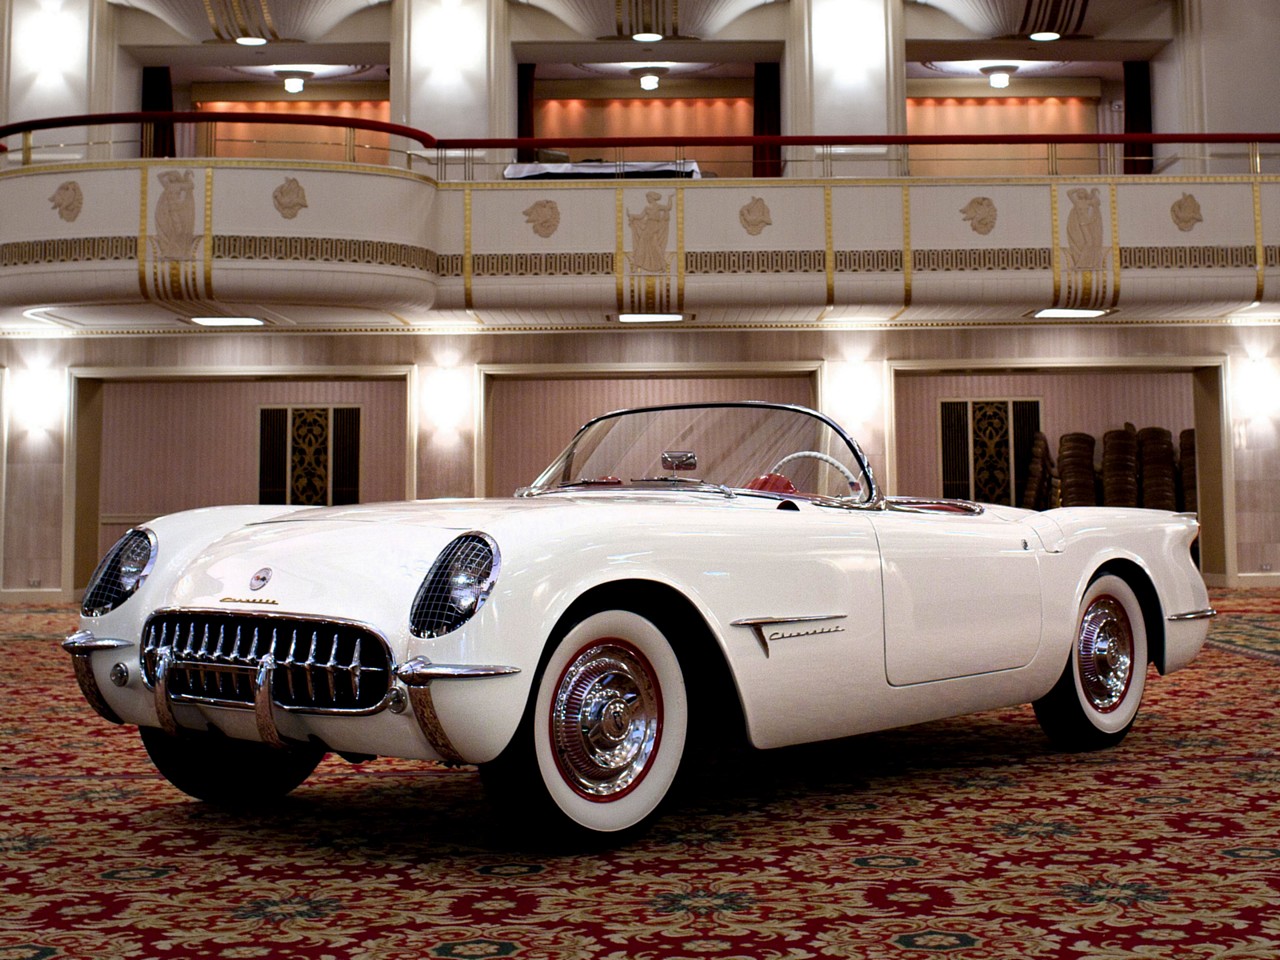 22 décembre 1952 – Le prototype de la Corvette se dévoile à New York